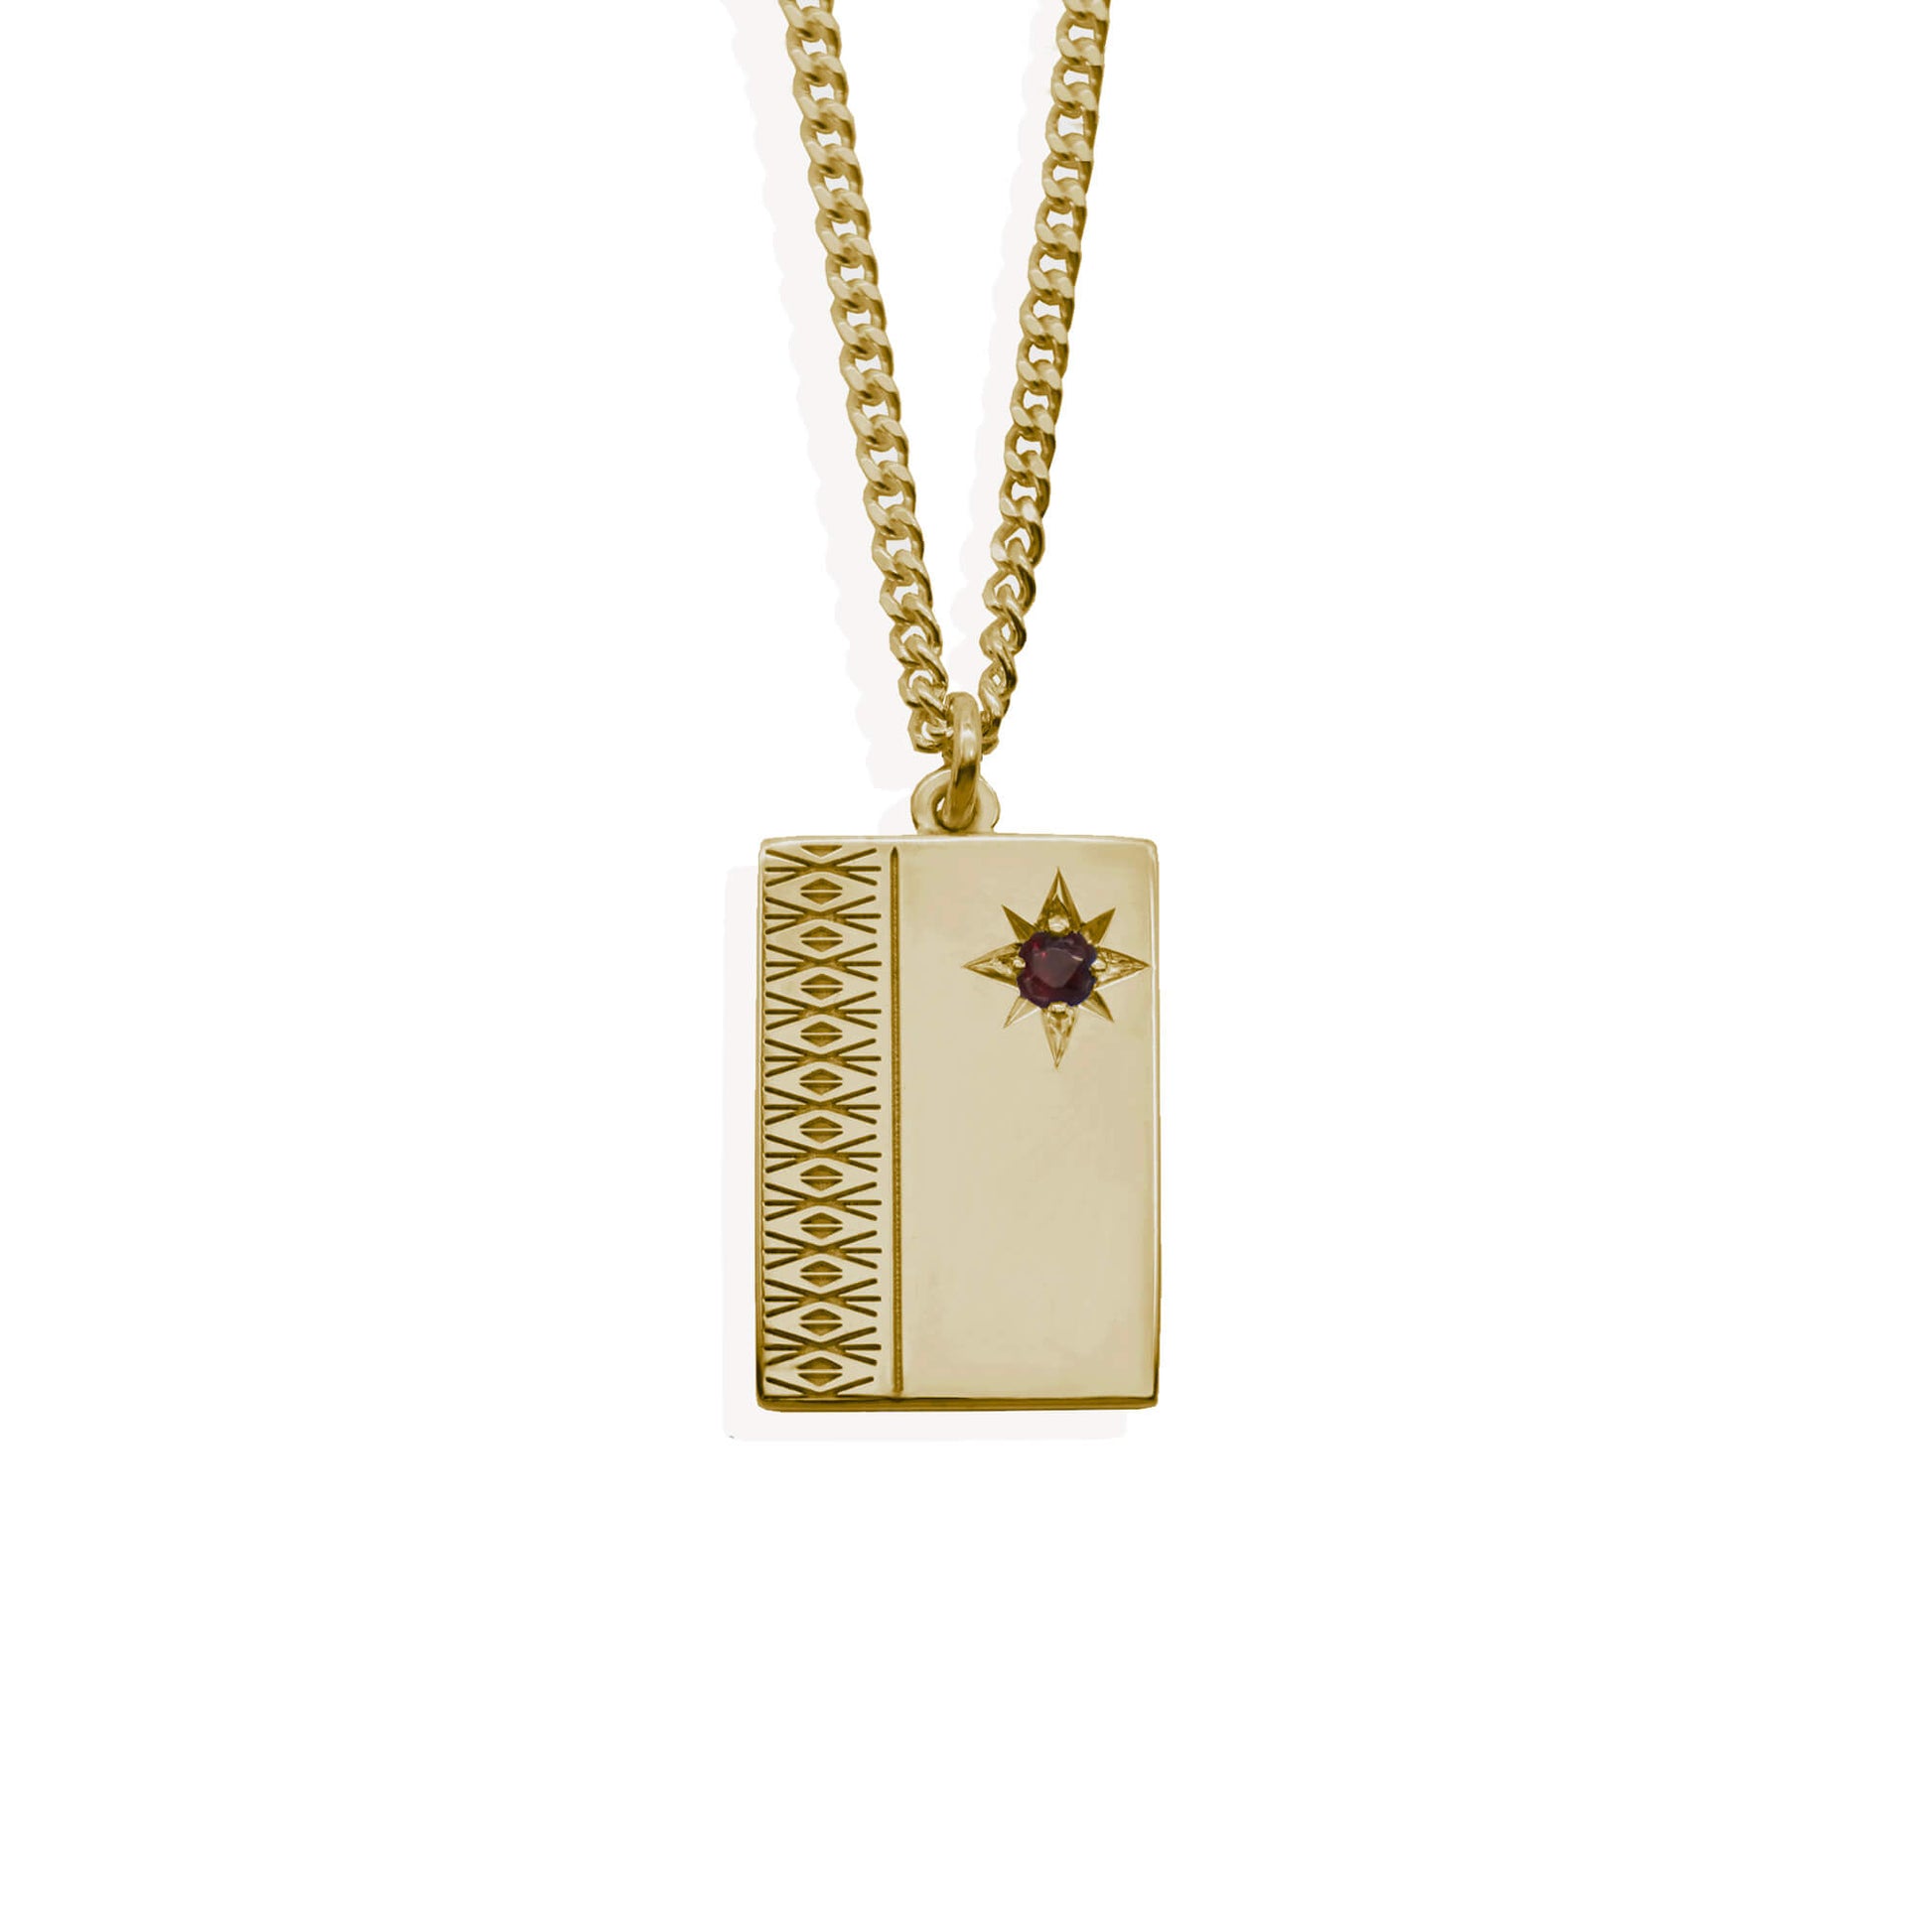 9k gold ingot with diamond engraving pattern & garnet set starburst on 9k gold curb chain.